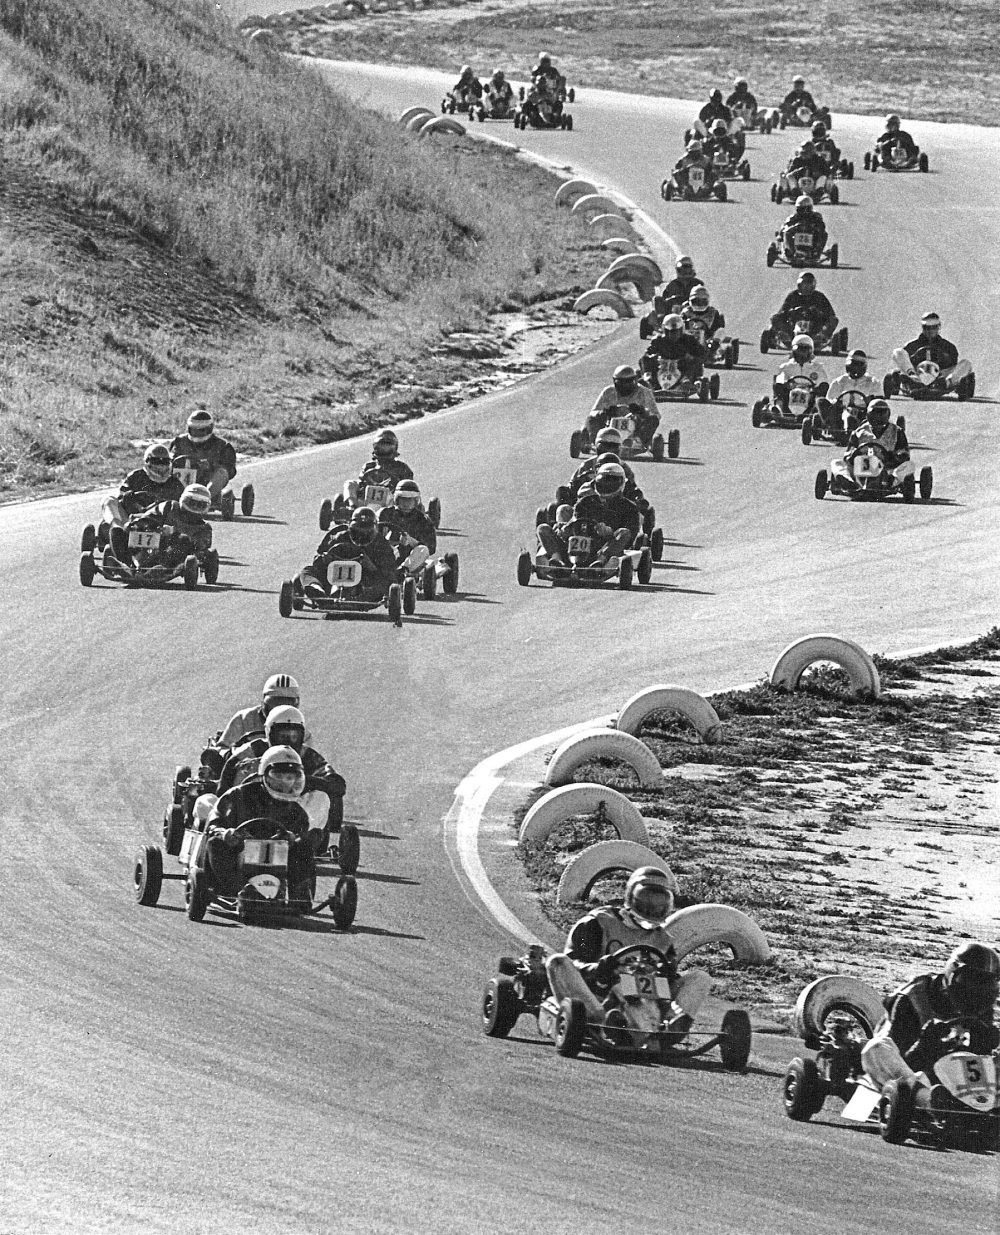 A go-kart race.